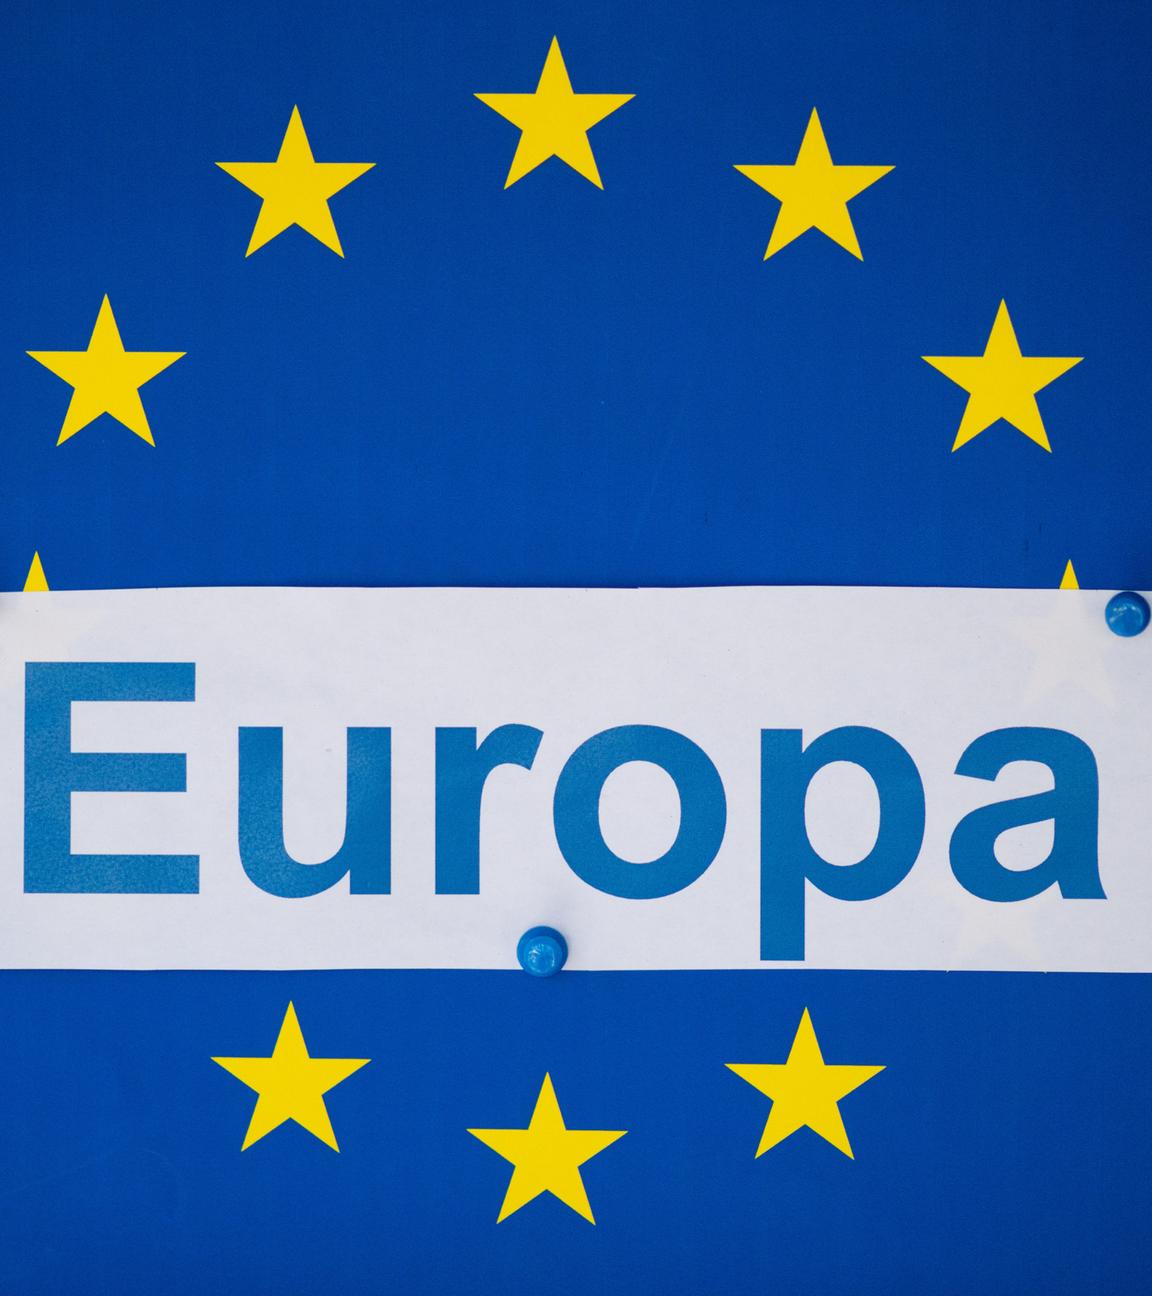 Das EU-Symbol: gelbe Sterne im Kreis auf blauem Grund